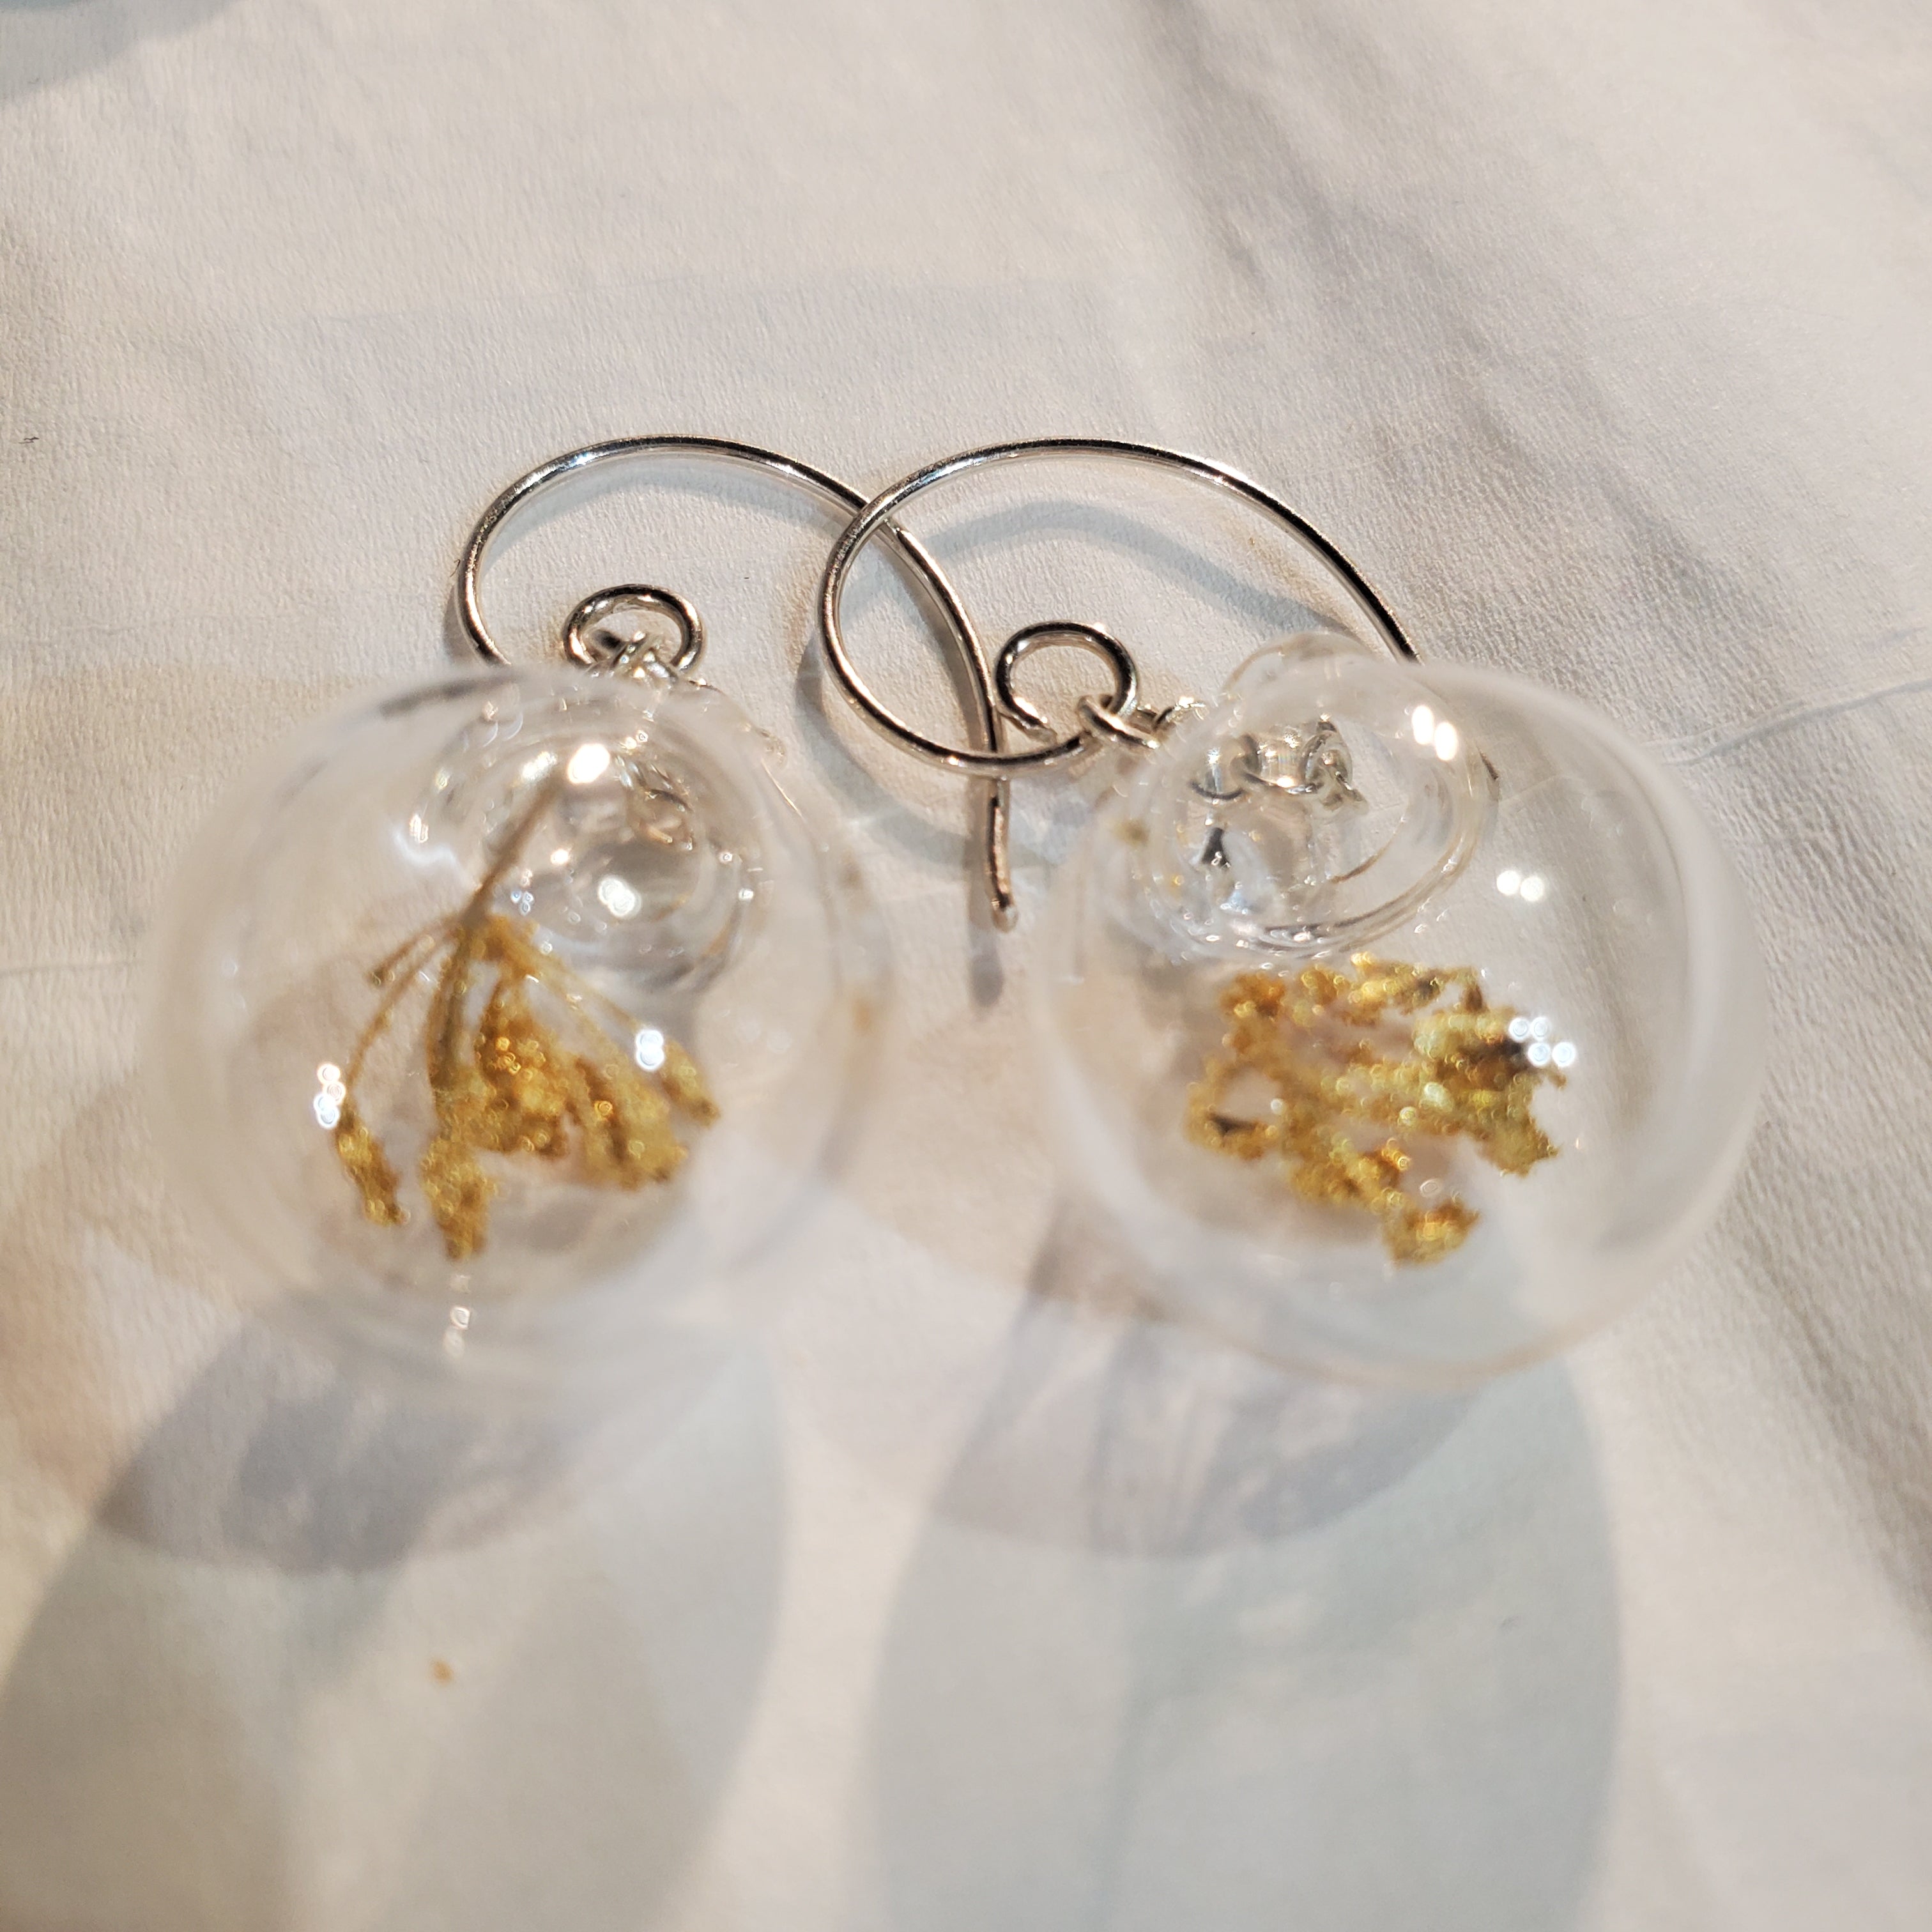 Gilded dill 22 k earrings